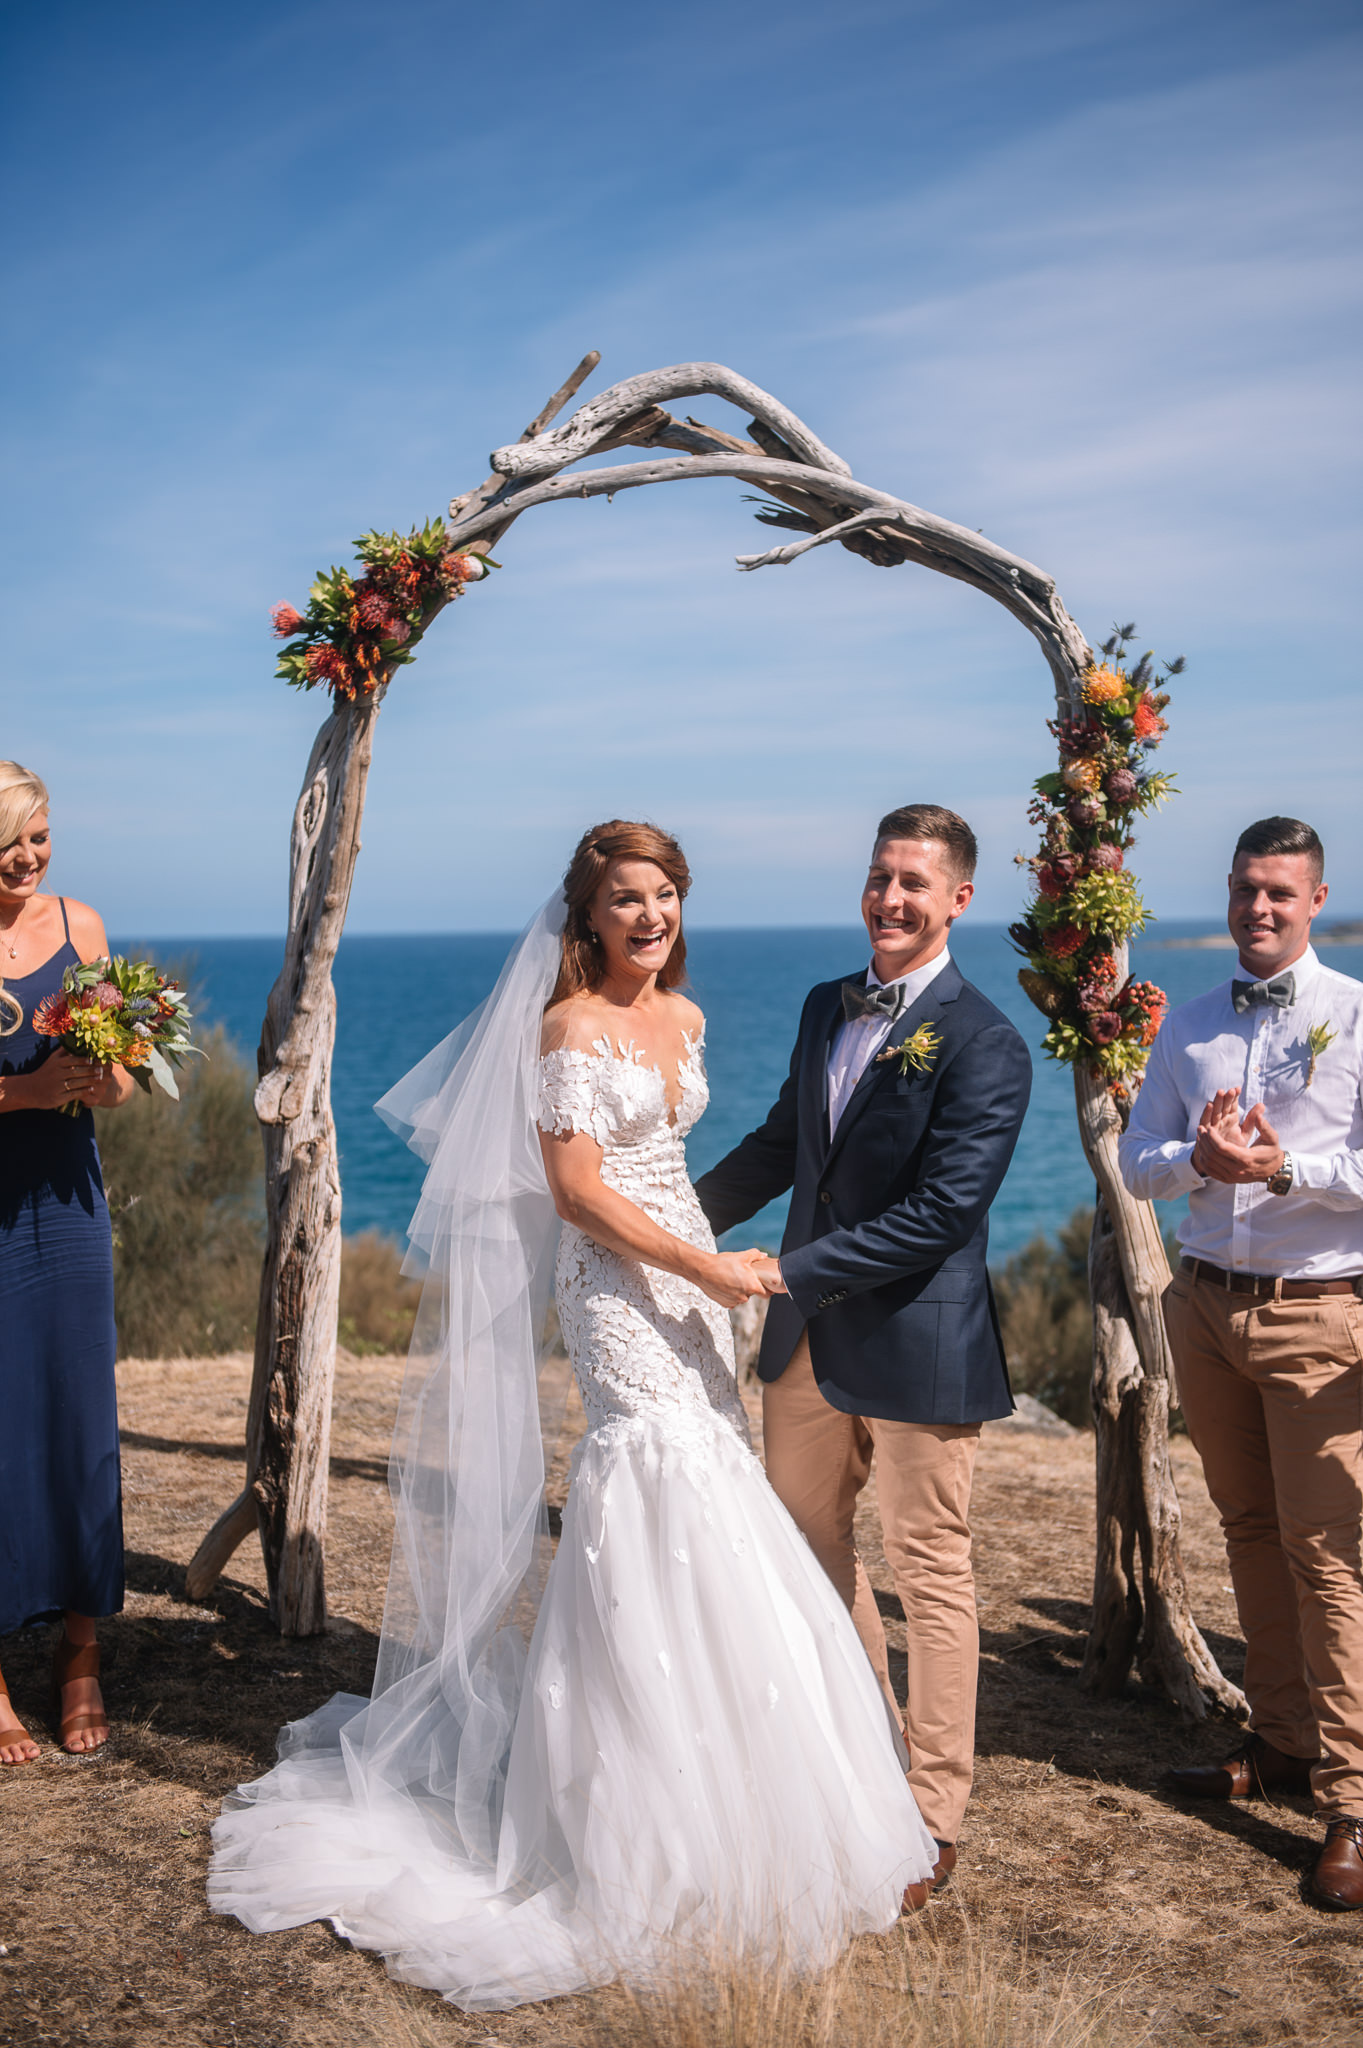  Coastal wedding under an arch of locally found driftwood 